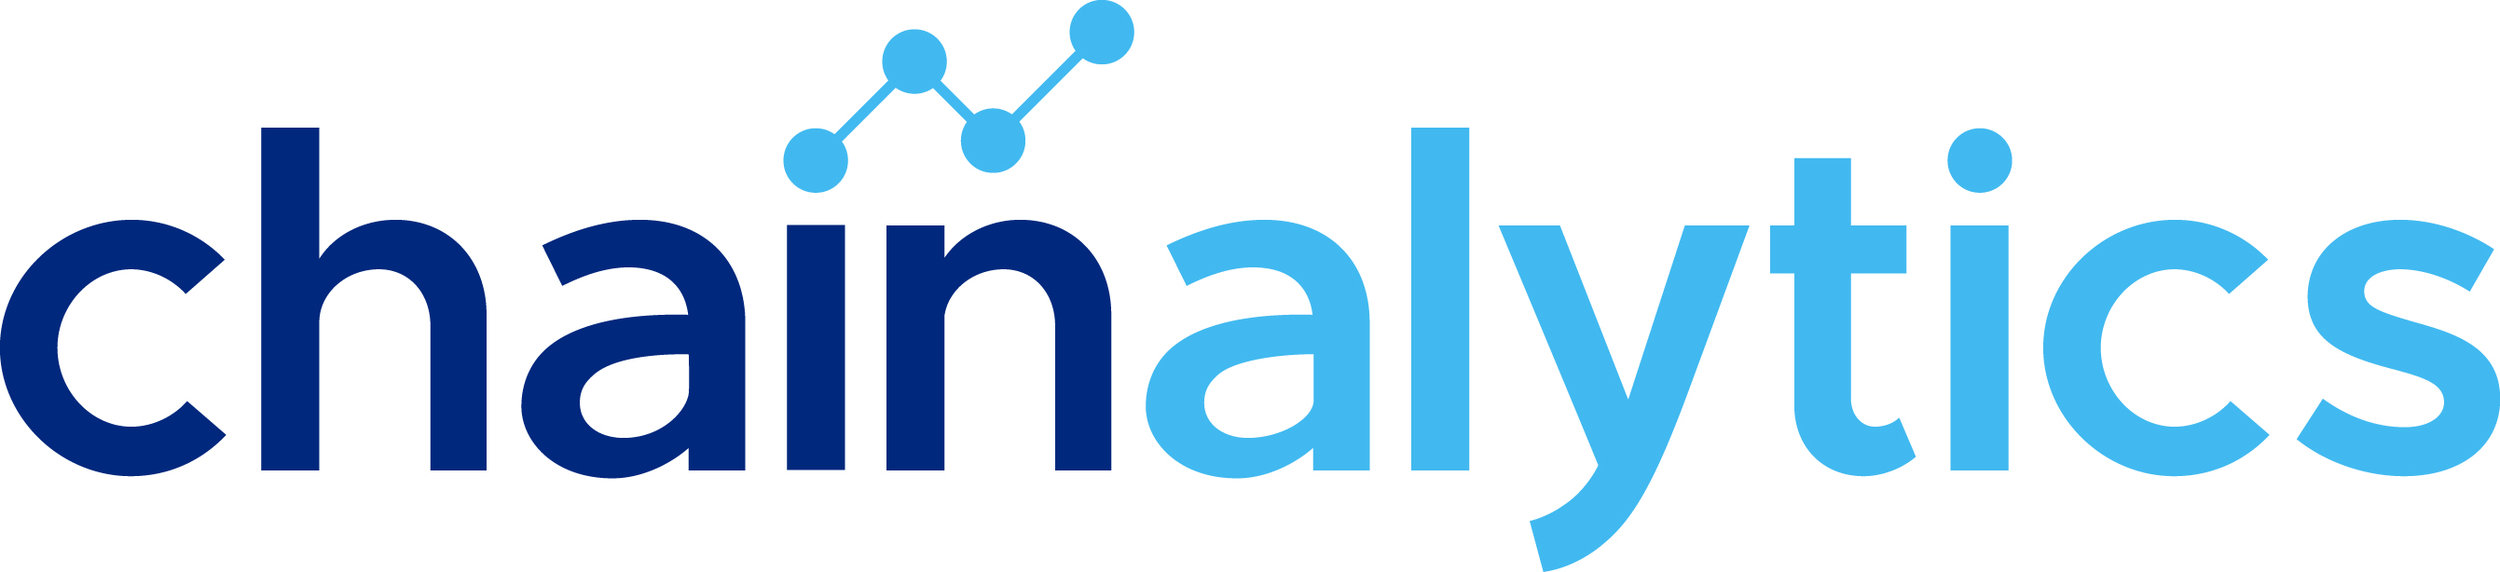 chainalytics-Logo-2018-full-color.jpg